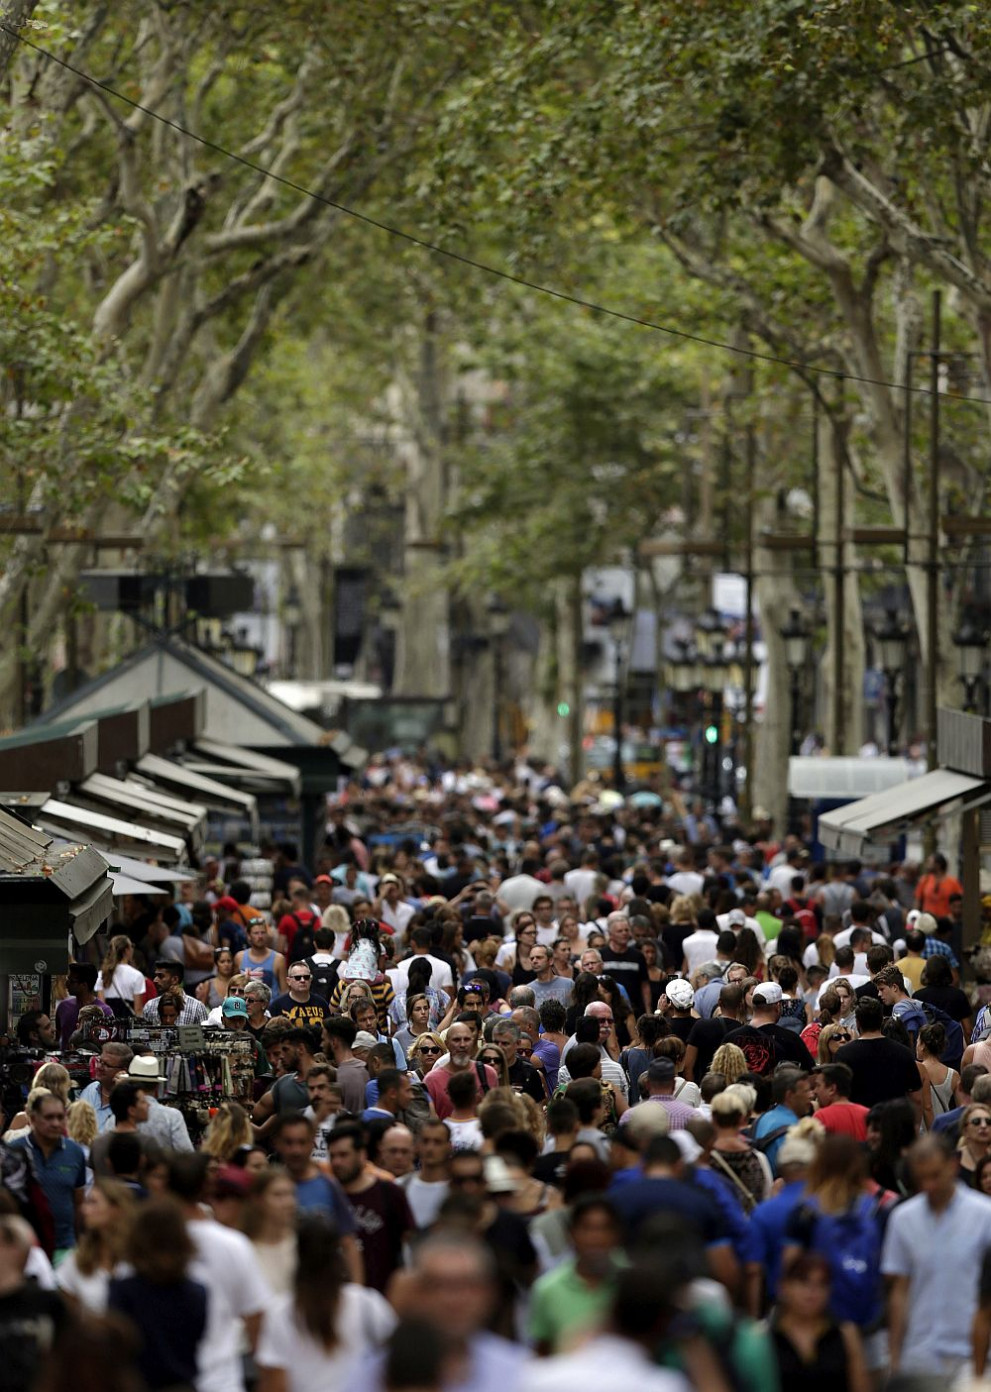  Улица Рамбла в Барселона, където бе осъществен кървясъл атентат 